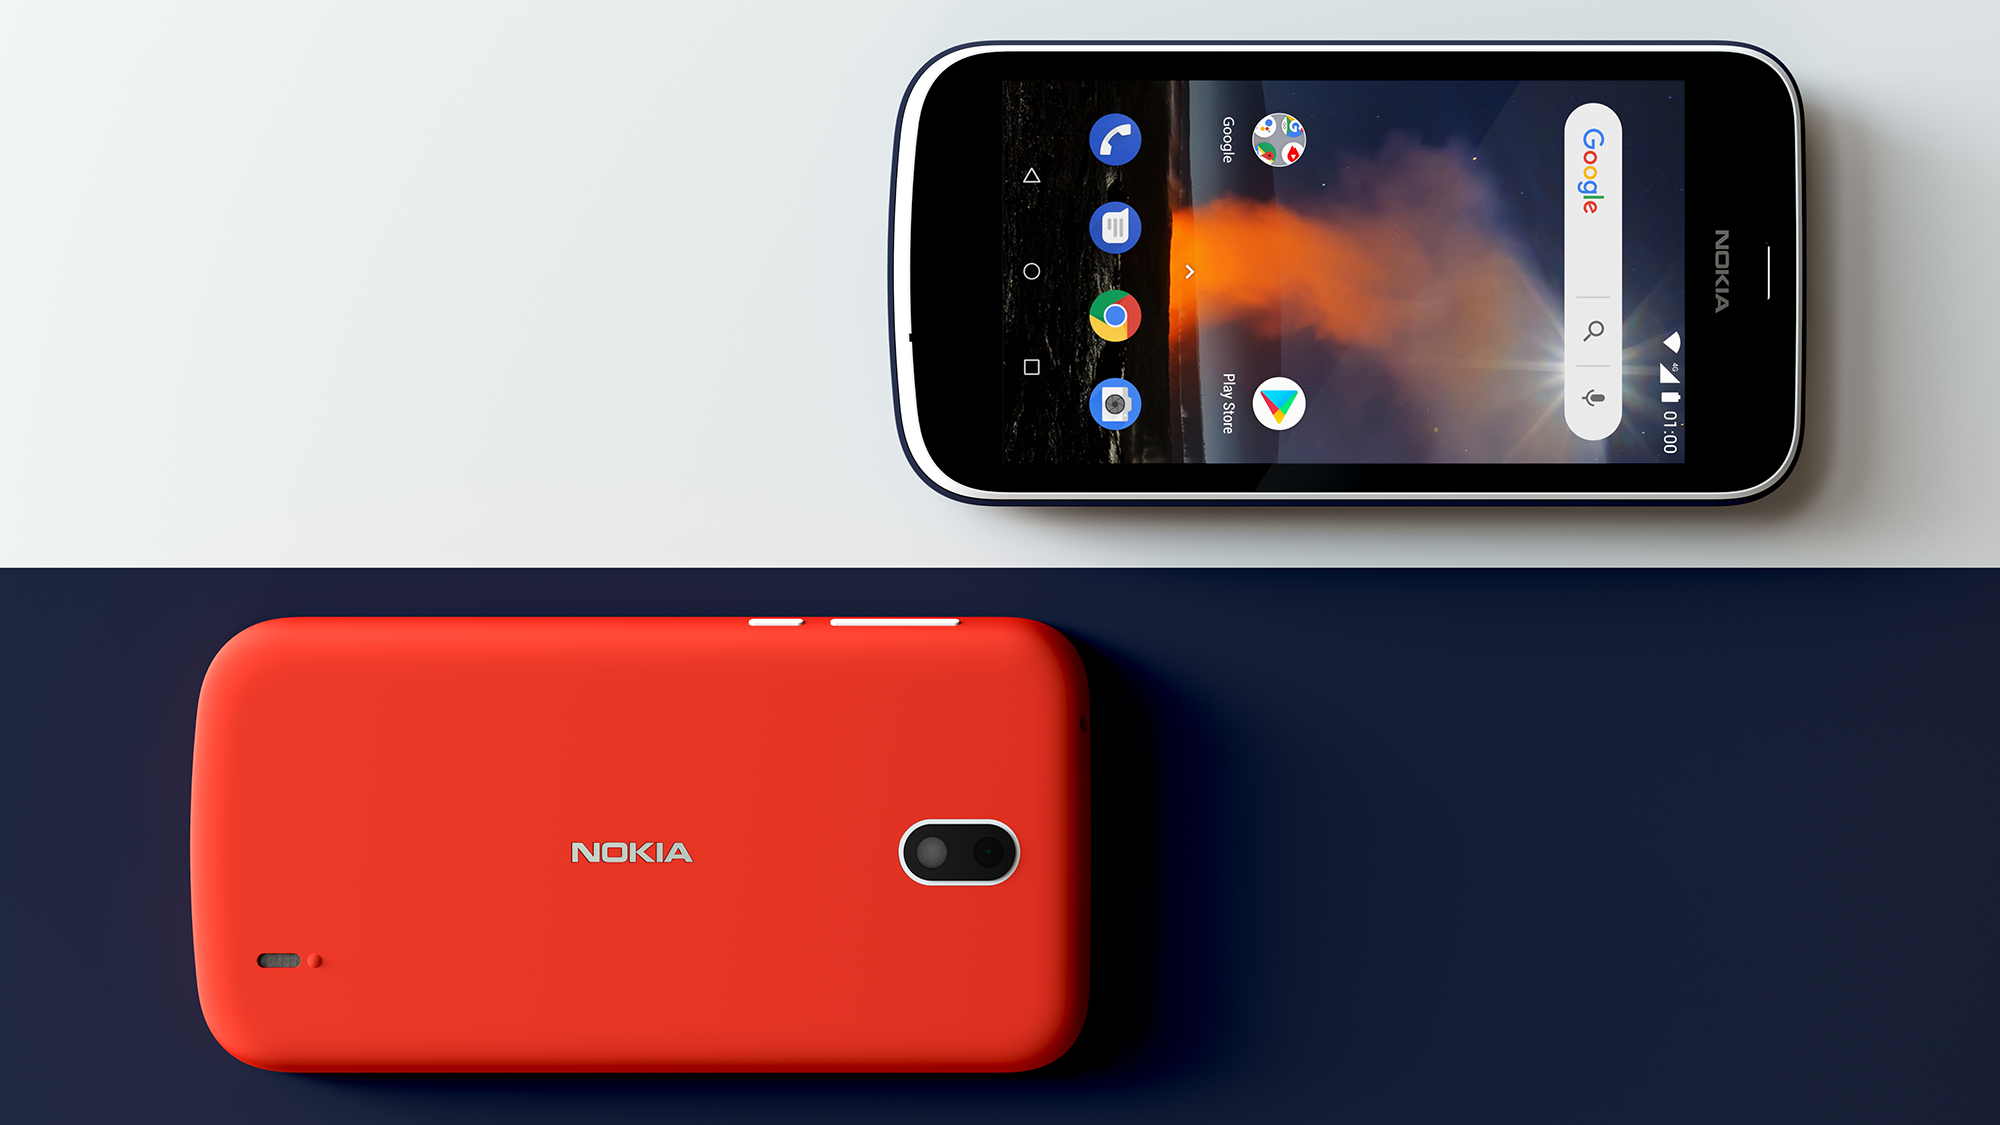 Nokia giới thiệu chiếc smartphone giá rẻ, có thể thay được nắp lưng nhiều màu sắc